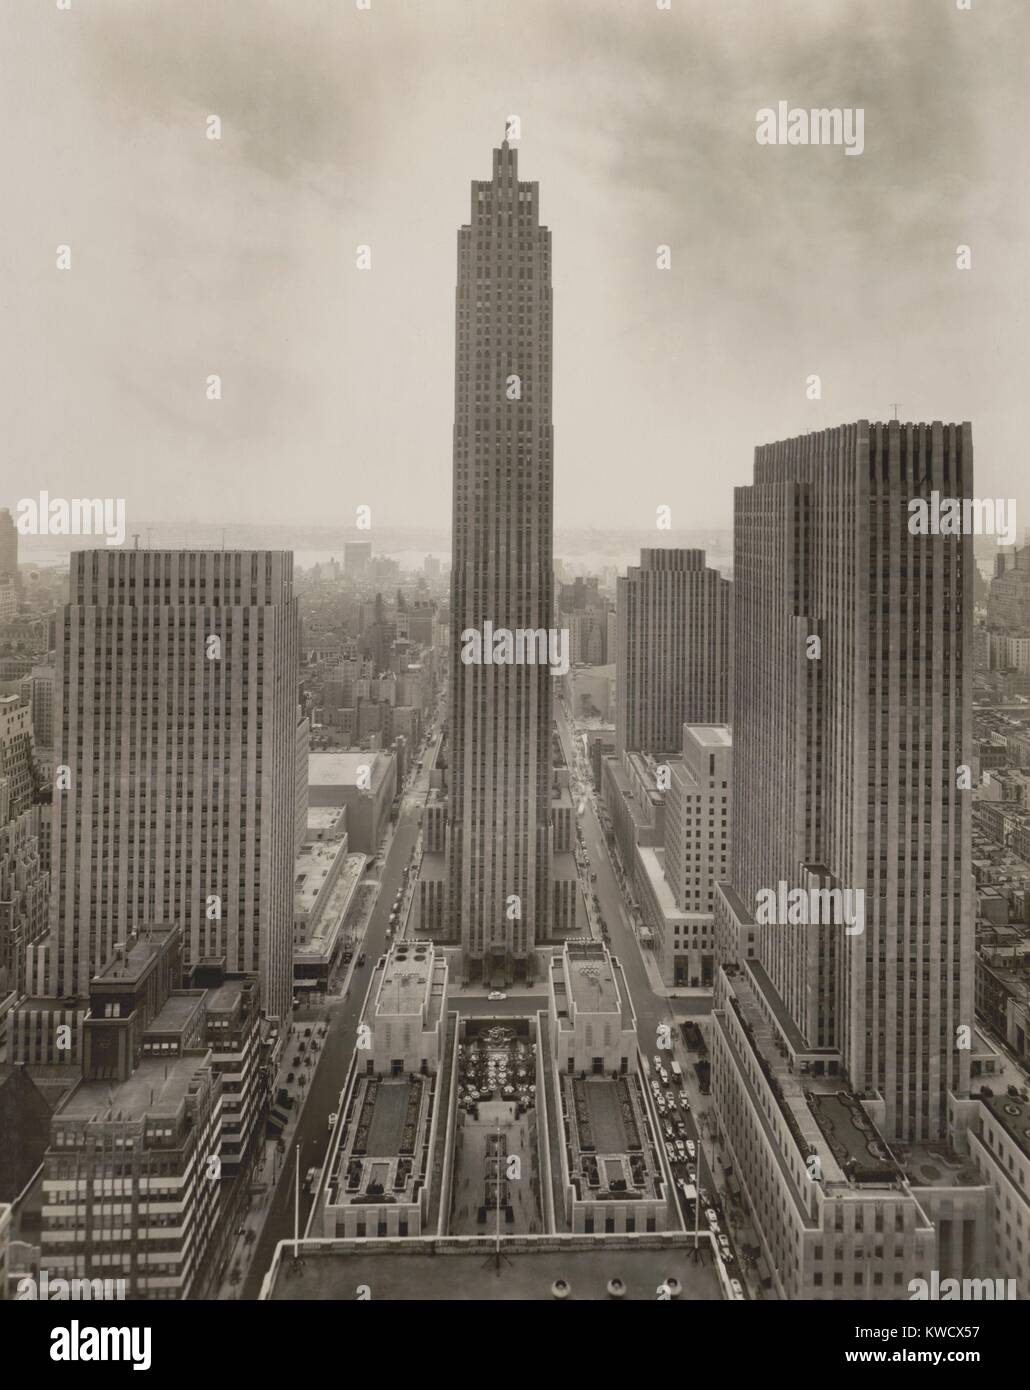 RCA-Gebäude in Rockefeller Center, New York City, 1939. Foto von Irving Underhill (BSLOC 2017 2 178) Stockfoto